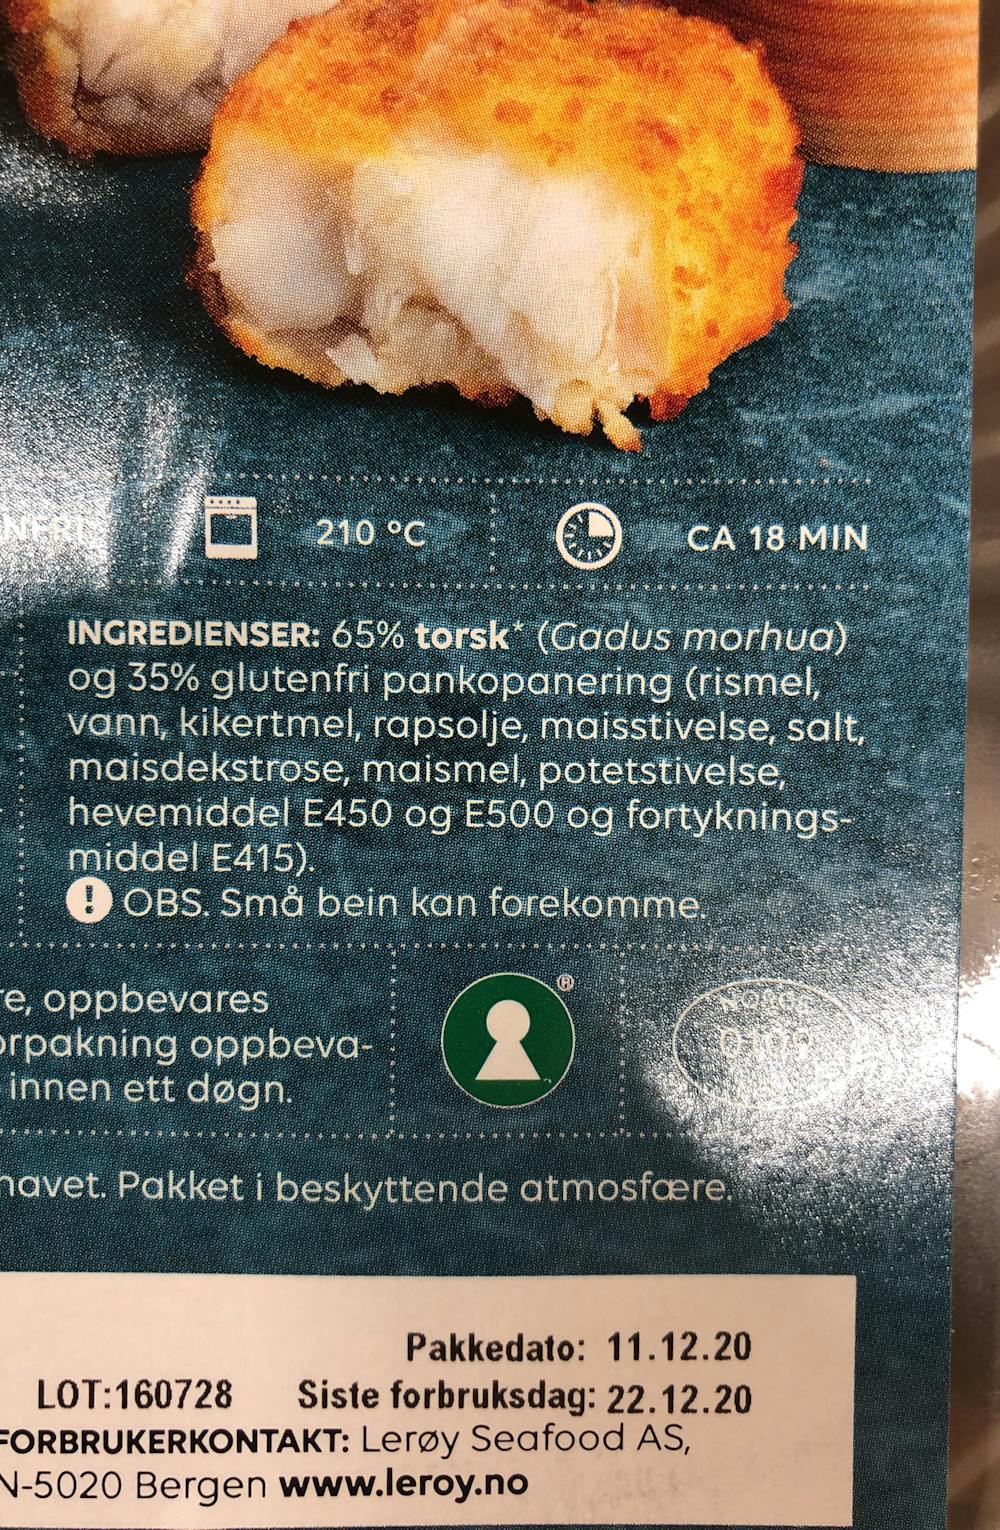 Ingredienslisten til Lerøy Nuggets av torsk